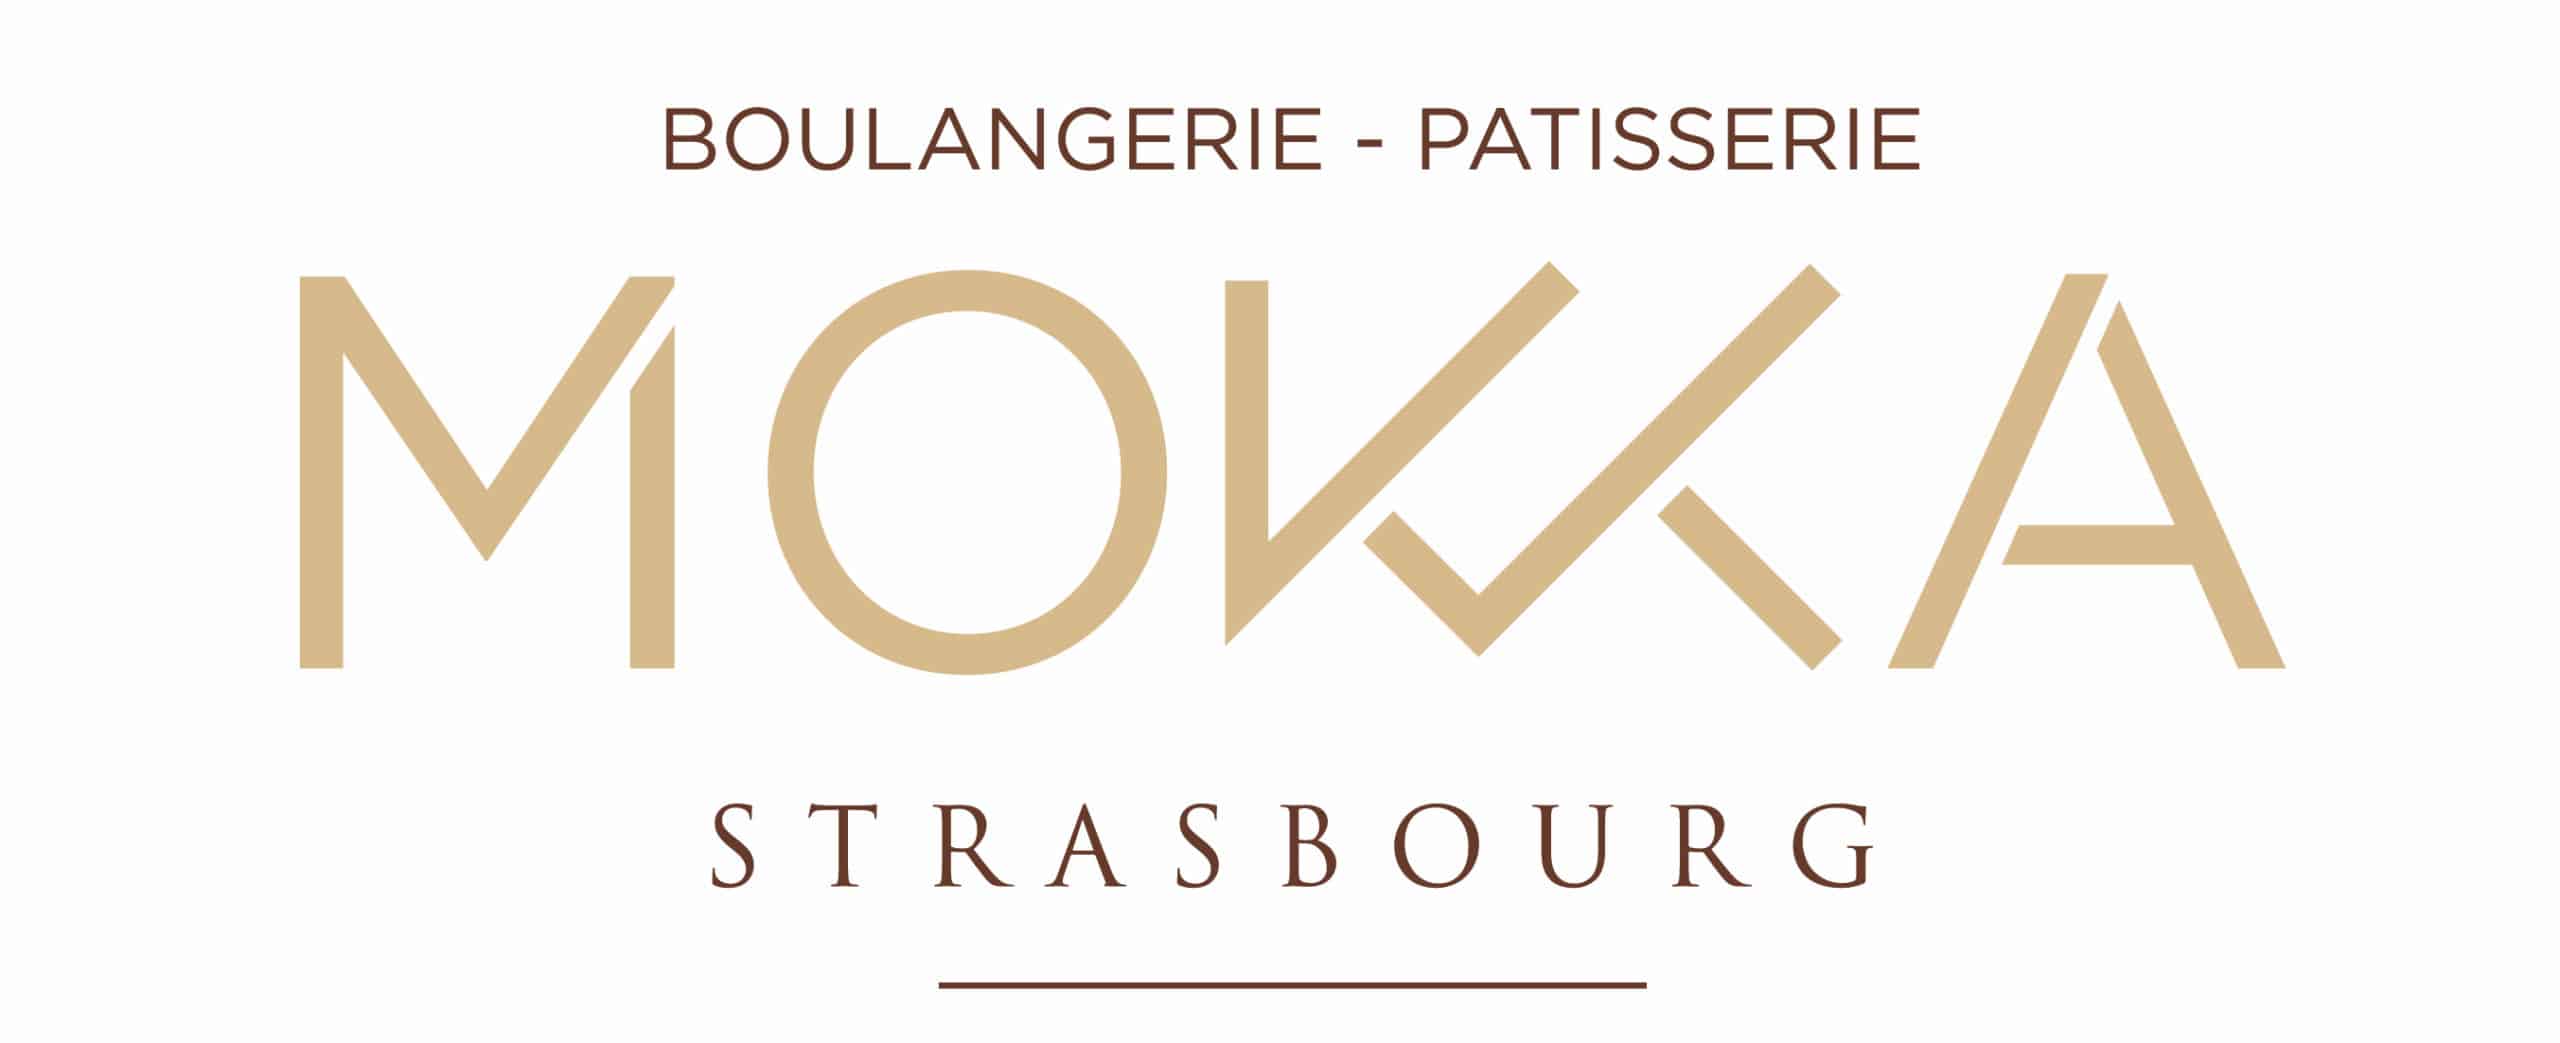 Mokka Strasbourg - Logo